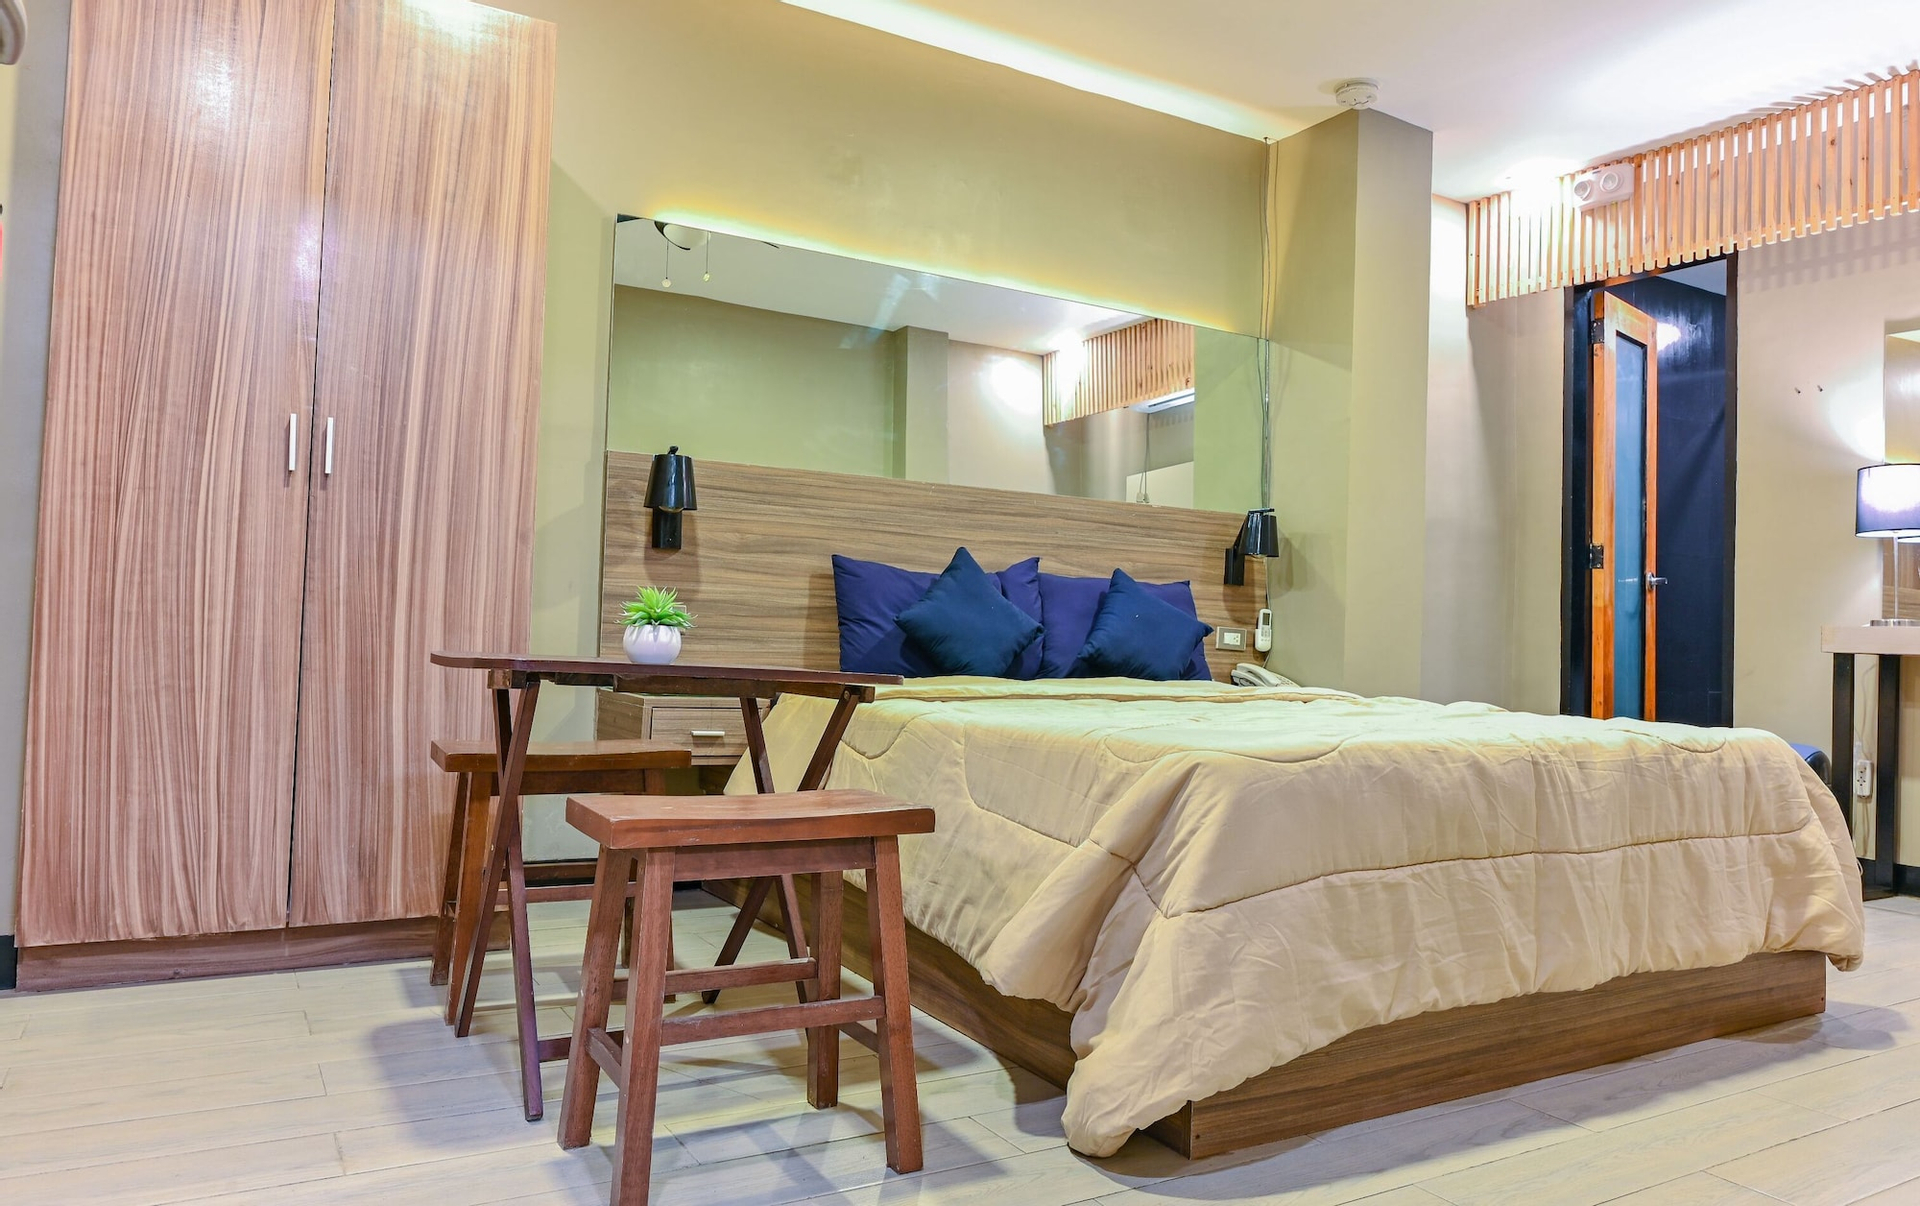 Bedroom 3, Capital O 890 Nami Hotel Tagaytay, Tagaytay City